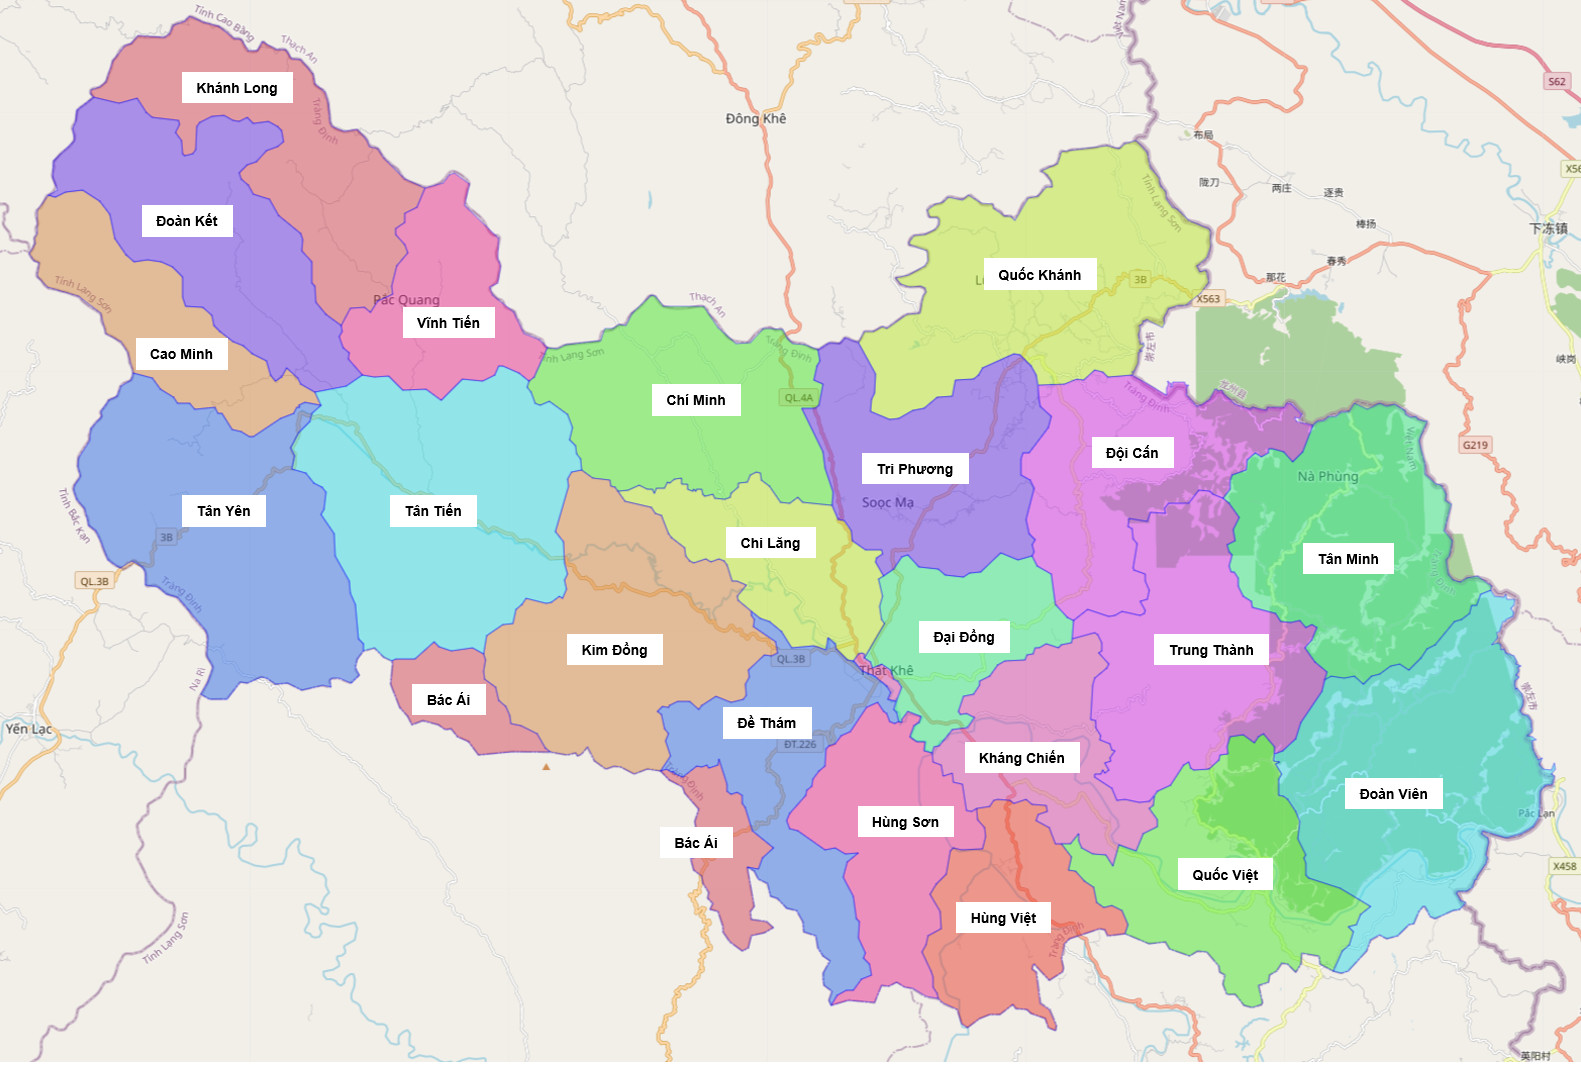 Bản đồ Huyện Tràng Định cập nhật năm 2024 đã ghi nhận những cải cách đáng kể về cơ sở hạ tầng và dịch vụ công cộng của huyện. Hãy tìm hiểu về các địa điểm thú vị và chương trình du lịch hấp dẫn sẽ giúp bạn hiểu rõ hơn về vùng đất này.